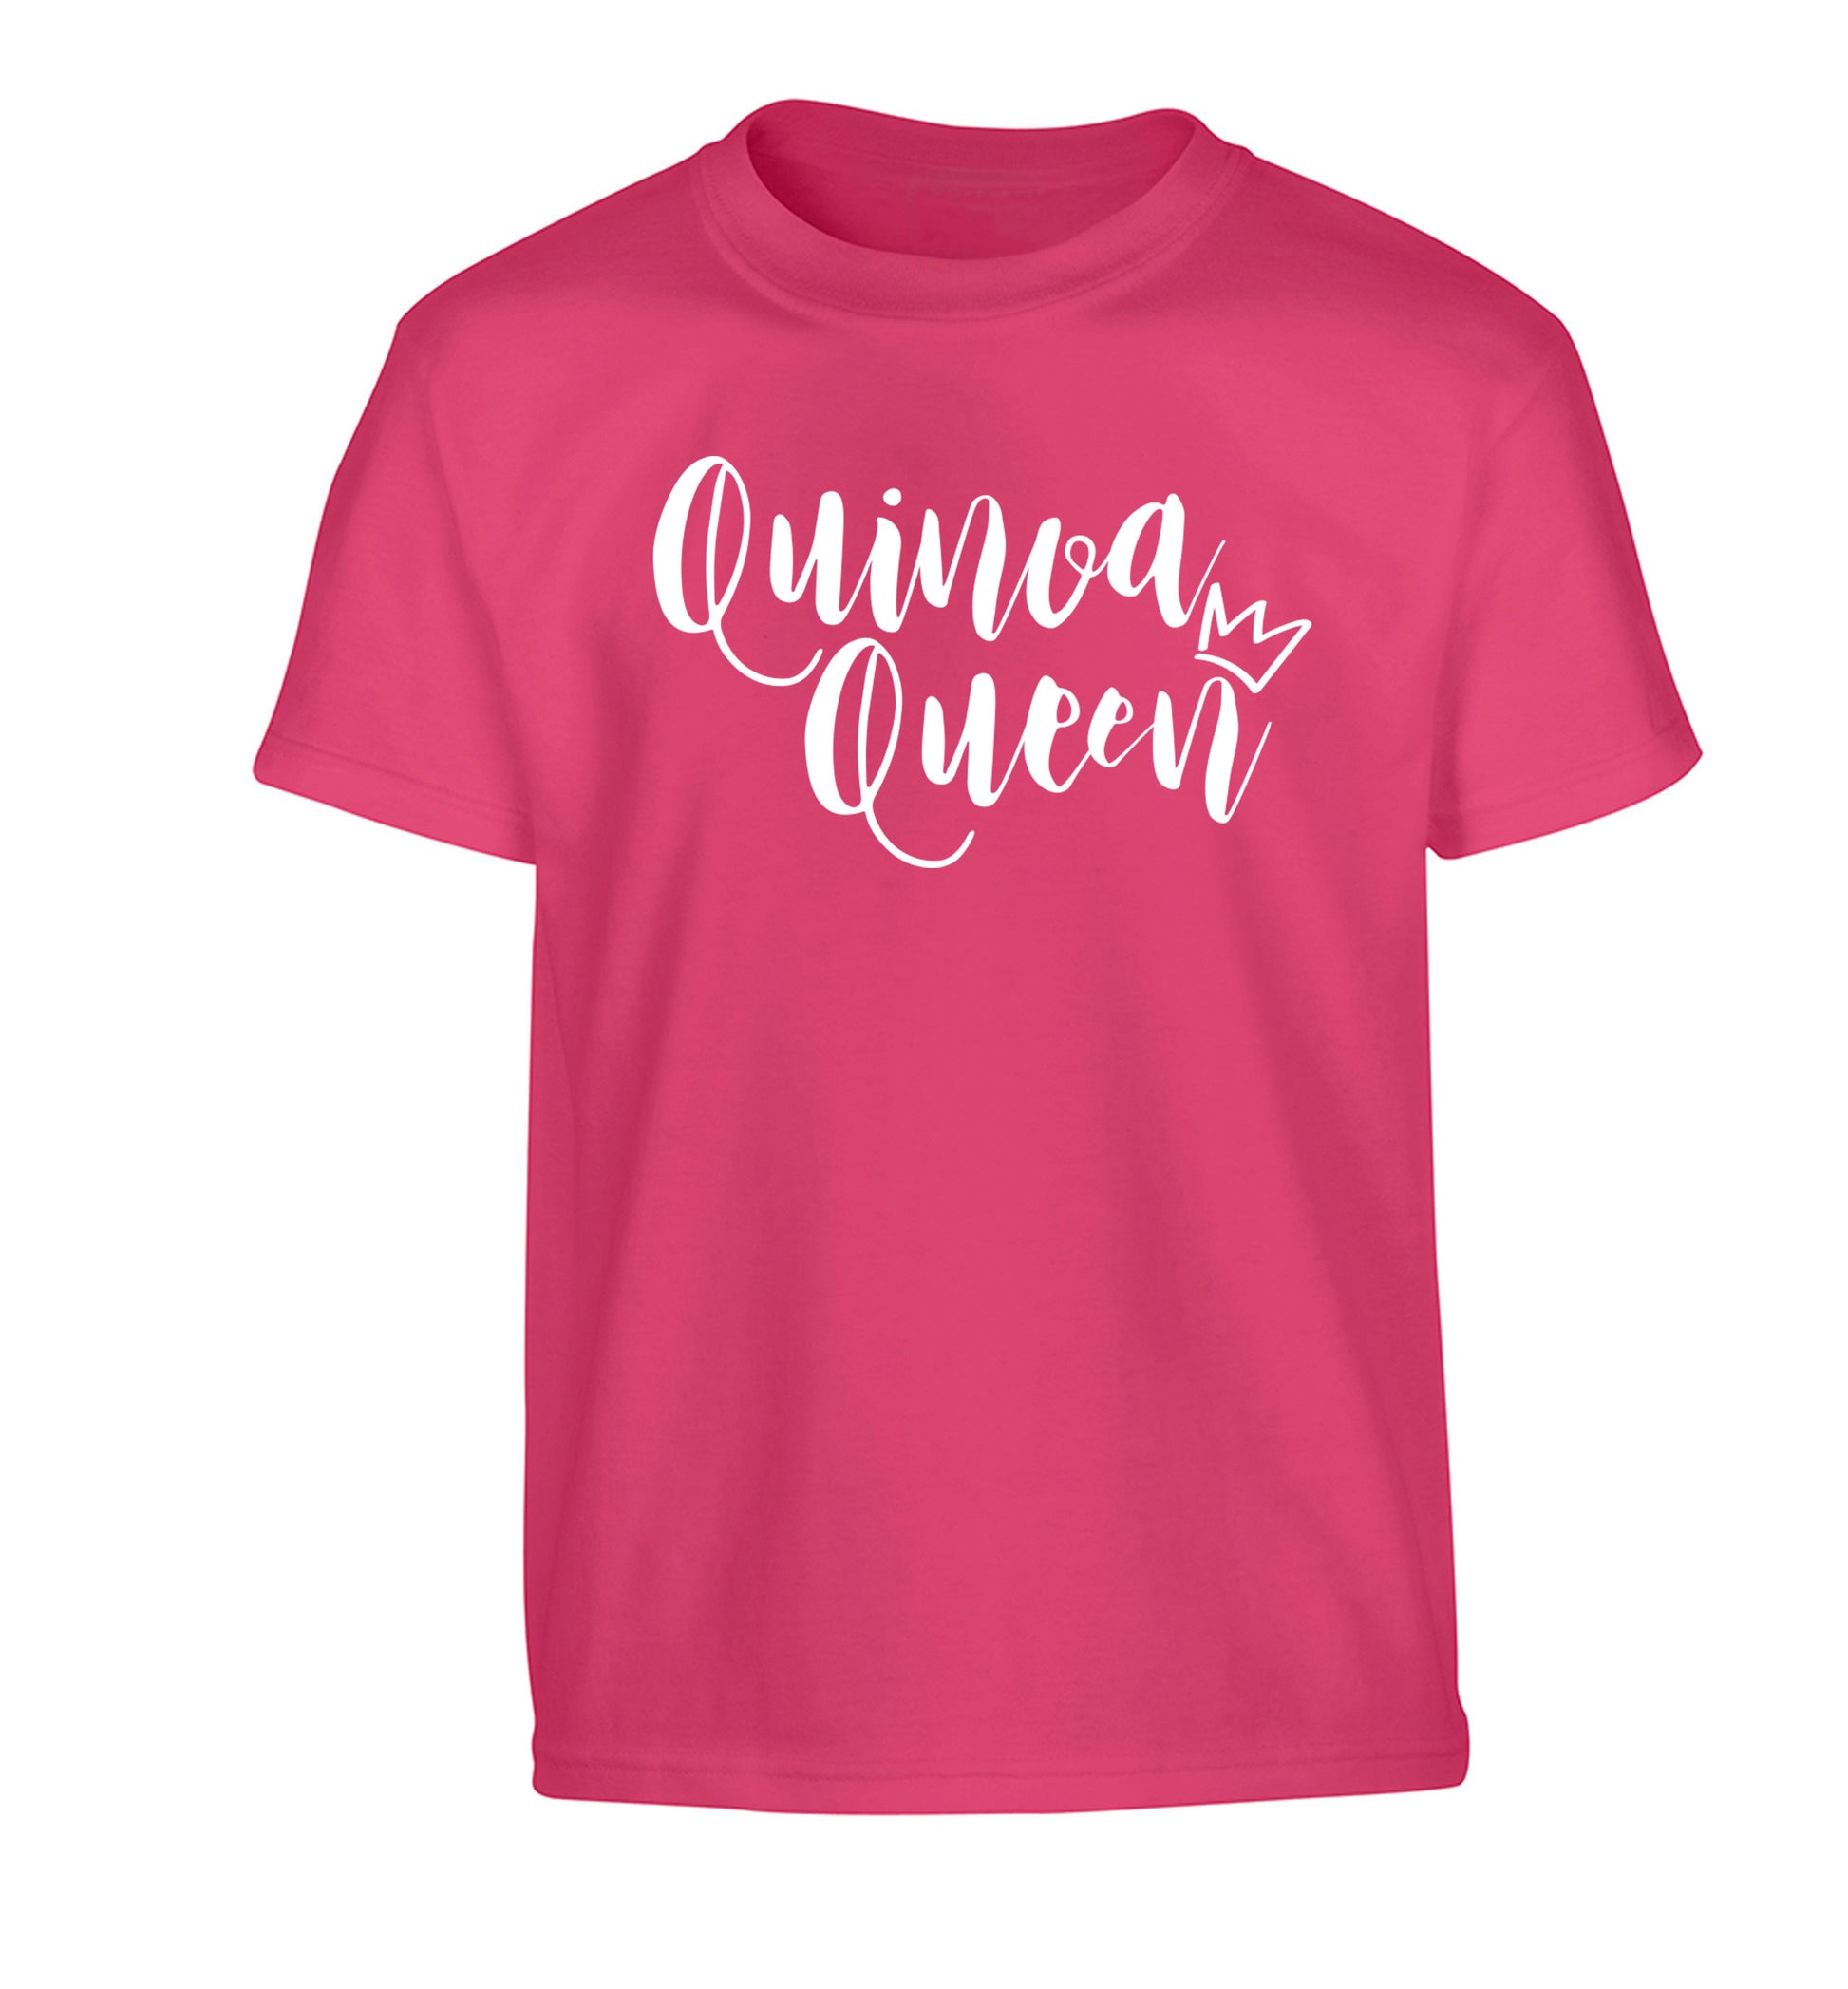 Quinoa Queen Children's pink Tshirt 12-14 Years